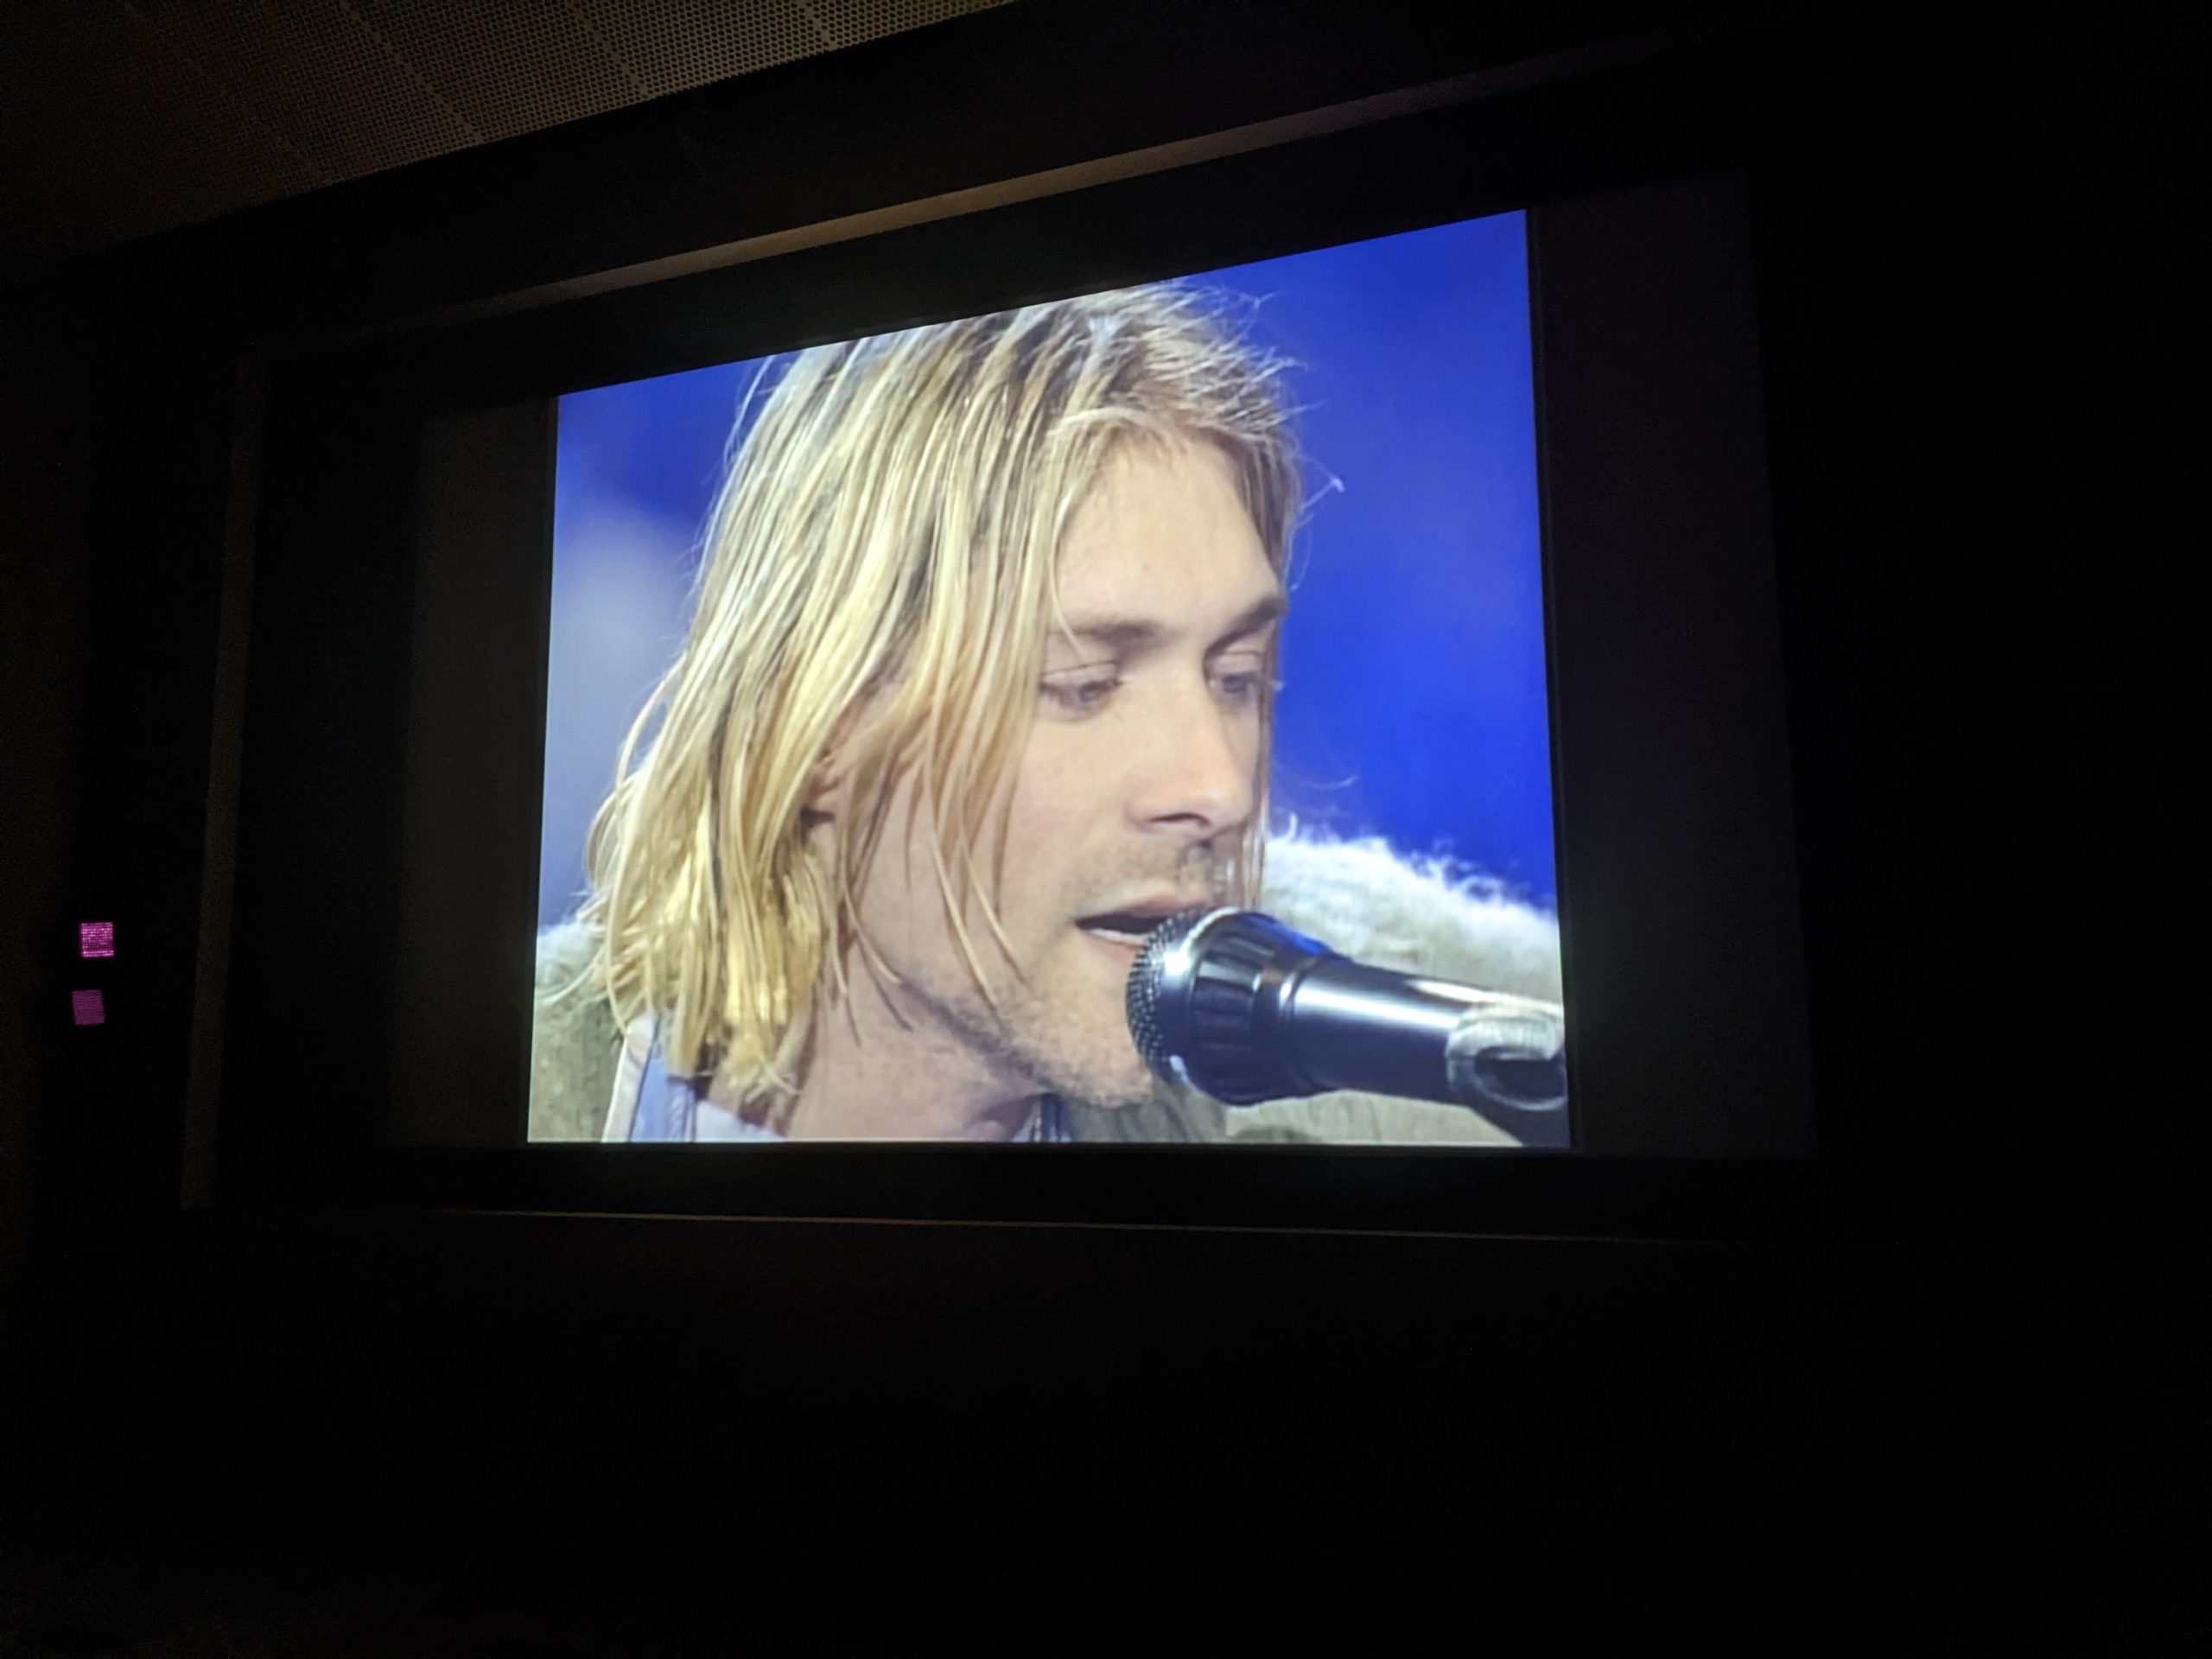 Kurt Cobain v televízore.